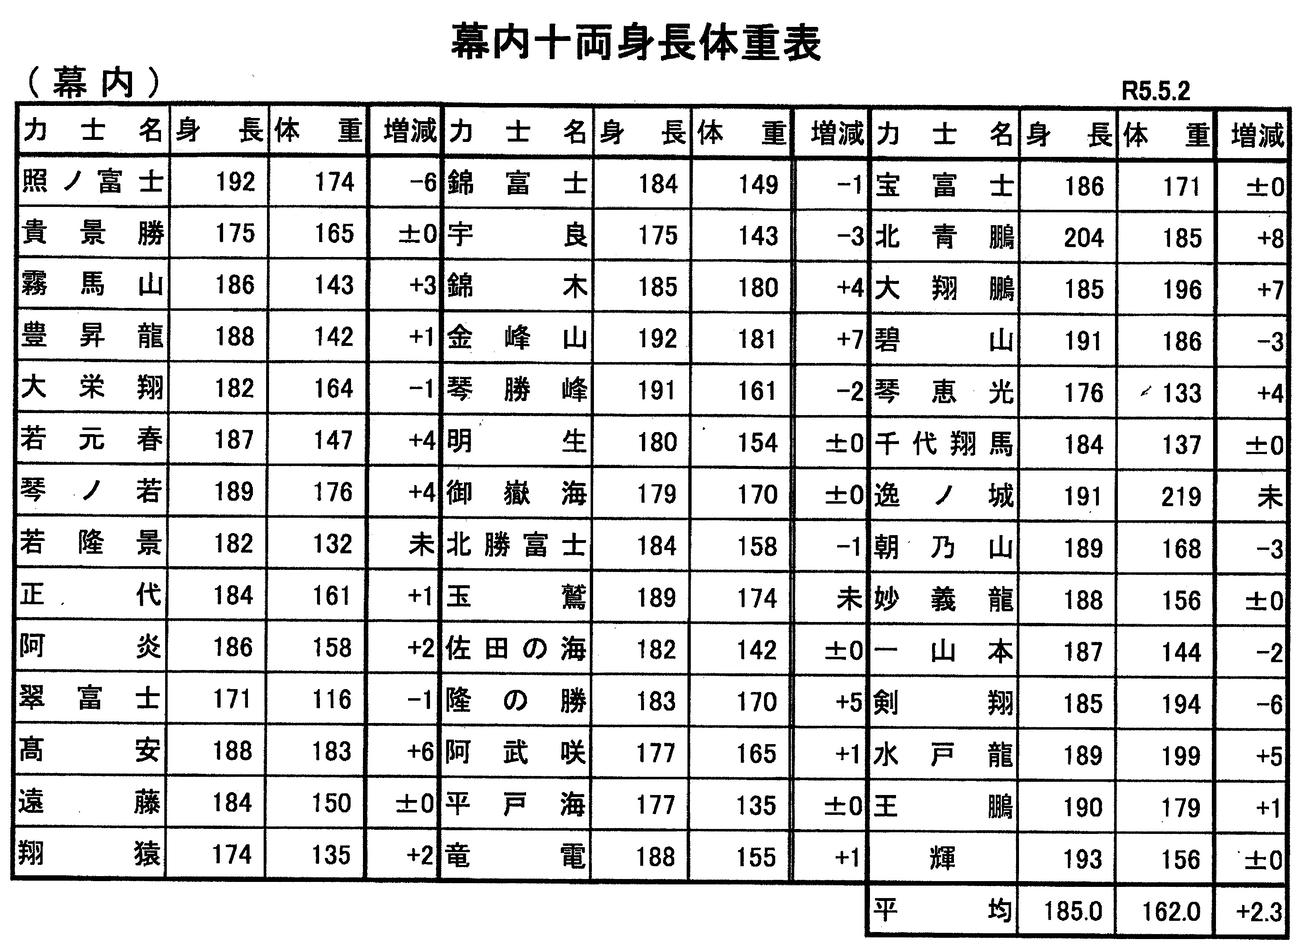 日本相撲協会が発表した幕内力士の身長体重表